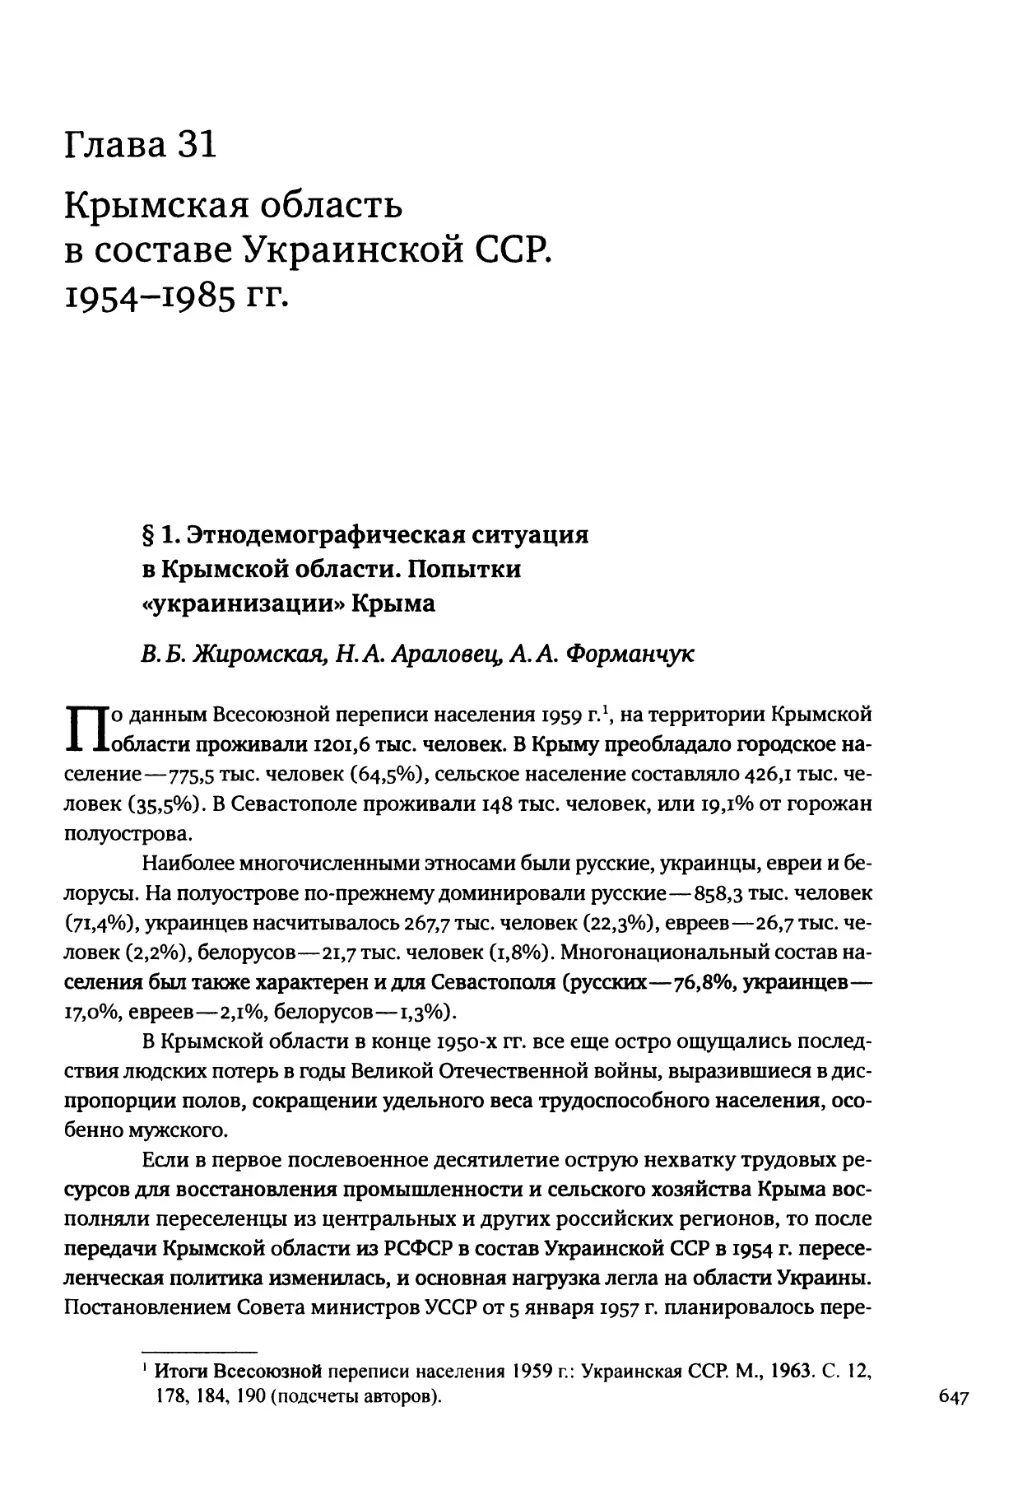 Глава 31. Крымская область в составе Украинской ССР. 1954-1985 гг